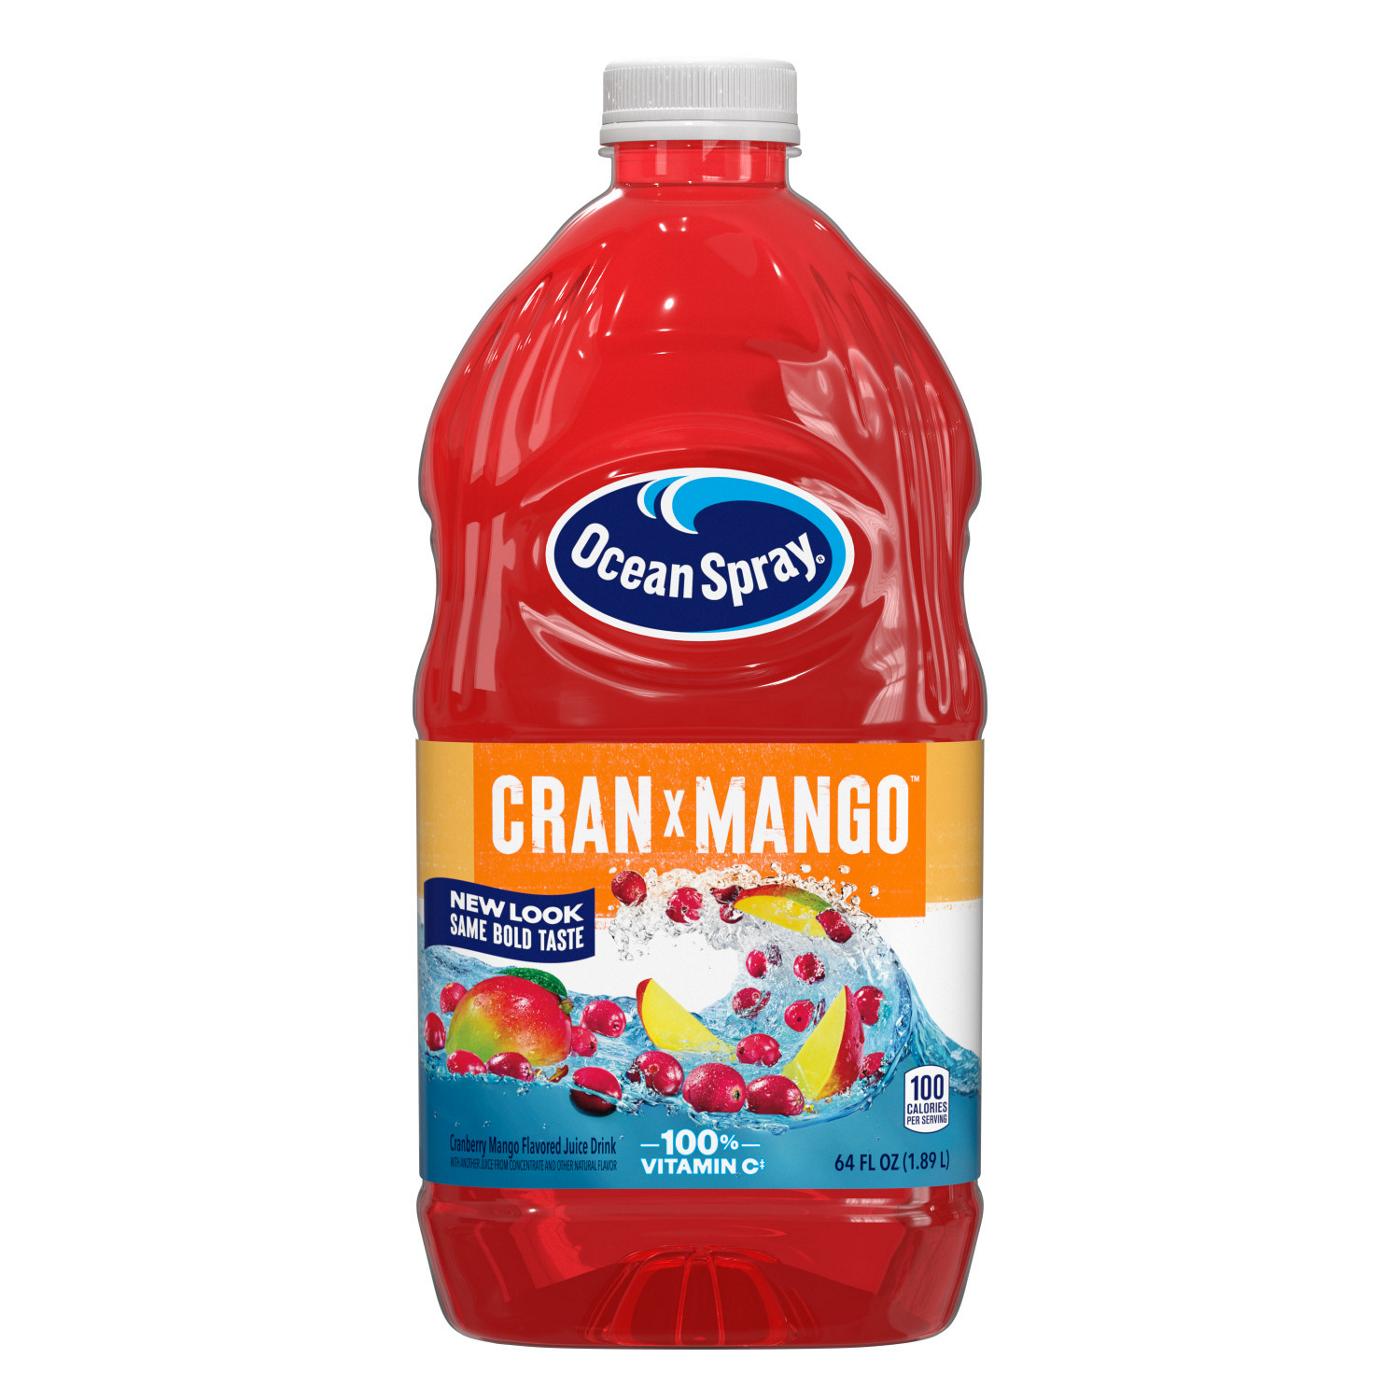 Ocean Spray Cran-Mango Juice Drink; image 1 of 6